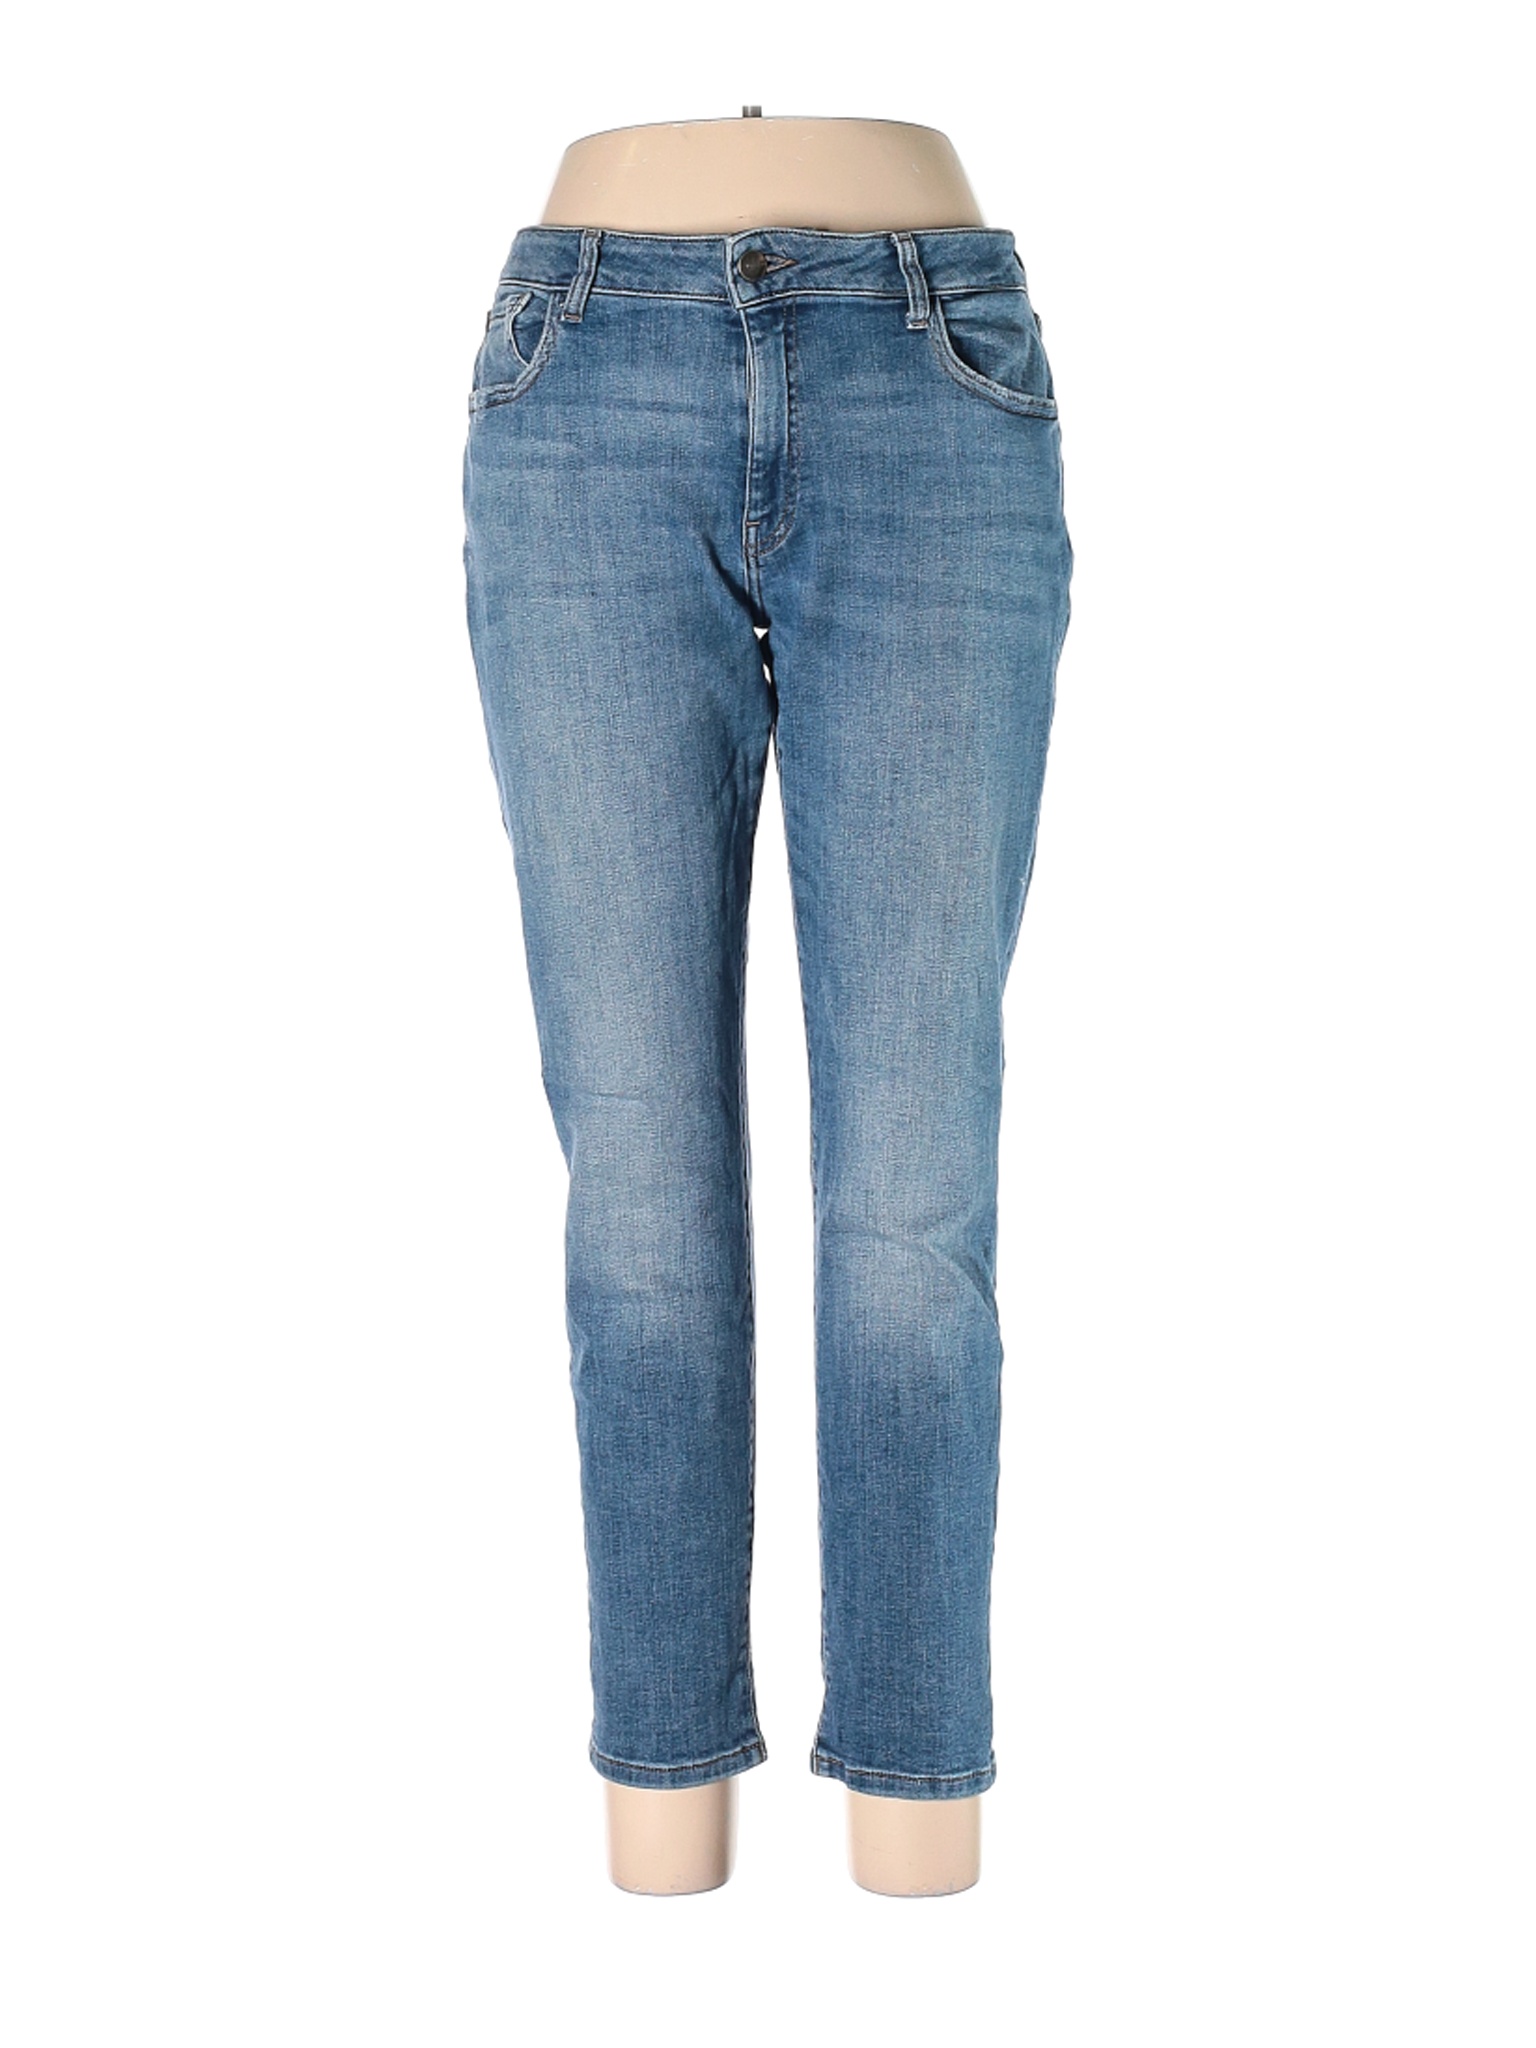 WARP + WEFT Women Blue Jeans 32W | eBay